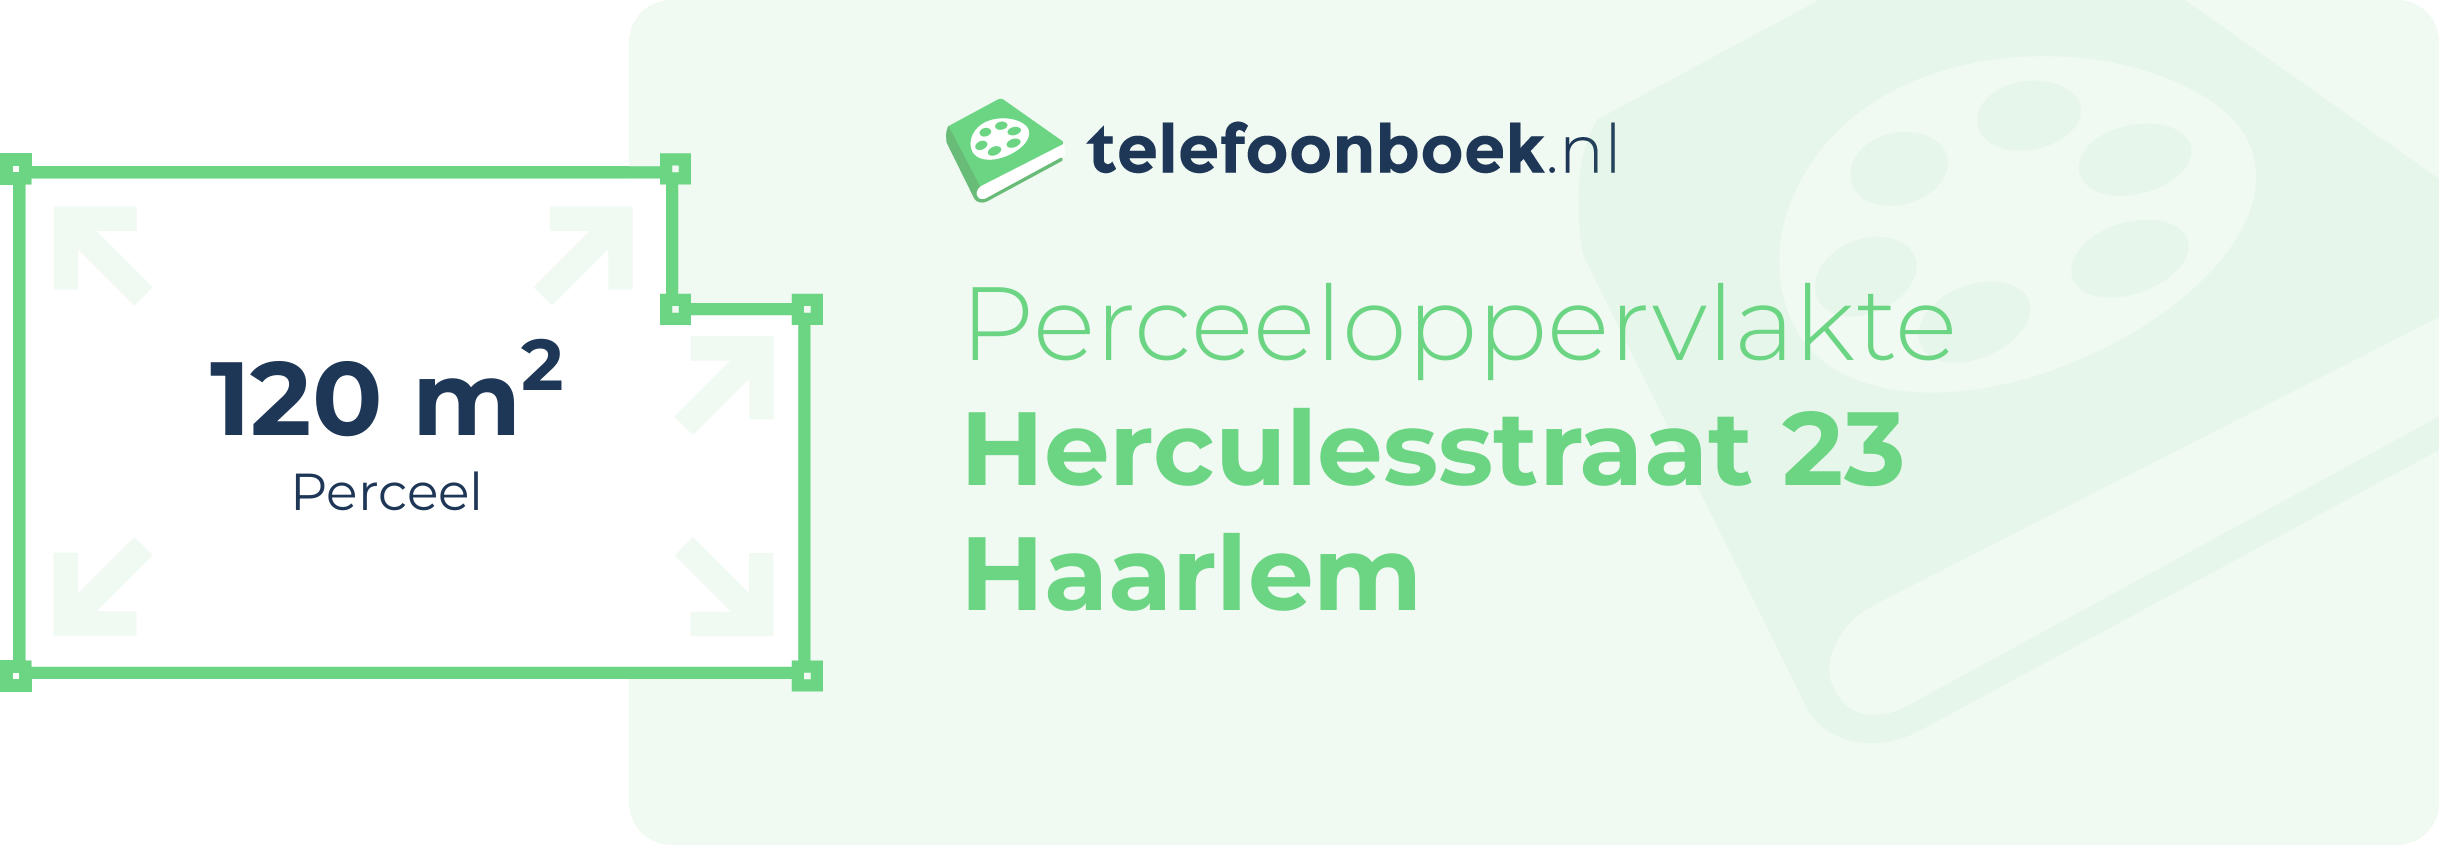 Perceeloppervlakte Herculesstraat 23 Haarlem